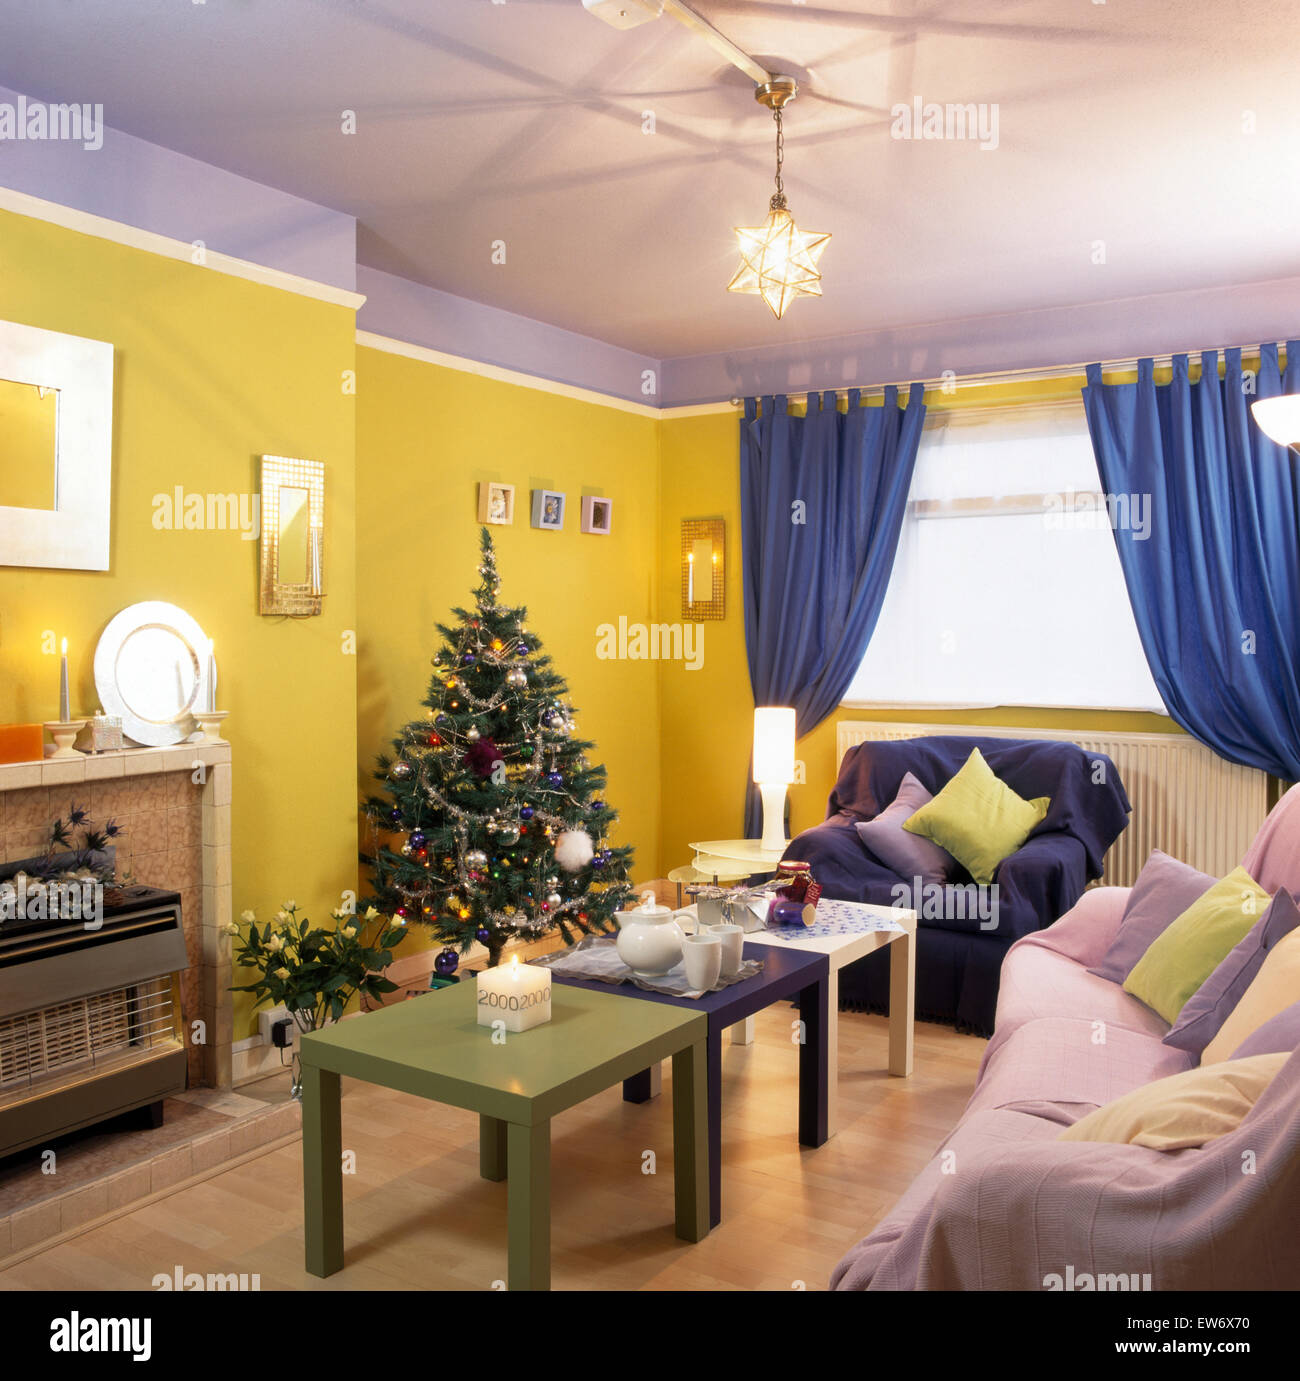 Weihnachtsbaum in Wirtschaft gelb und lila neunziger Jahre Stil Wohnzimmer Stockfoto